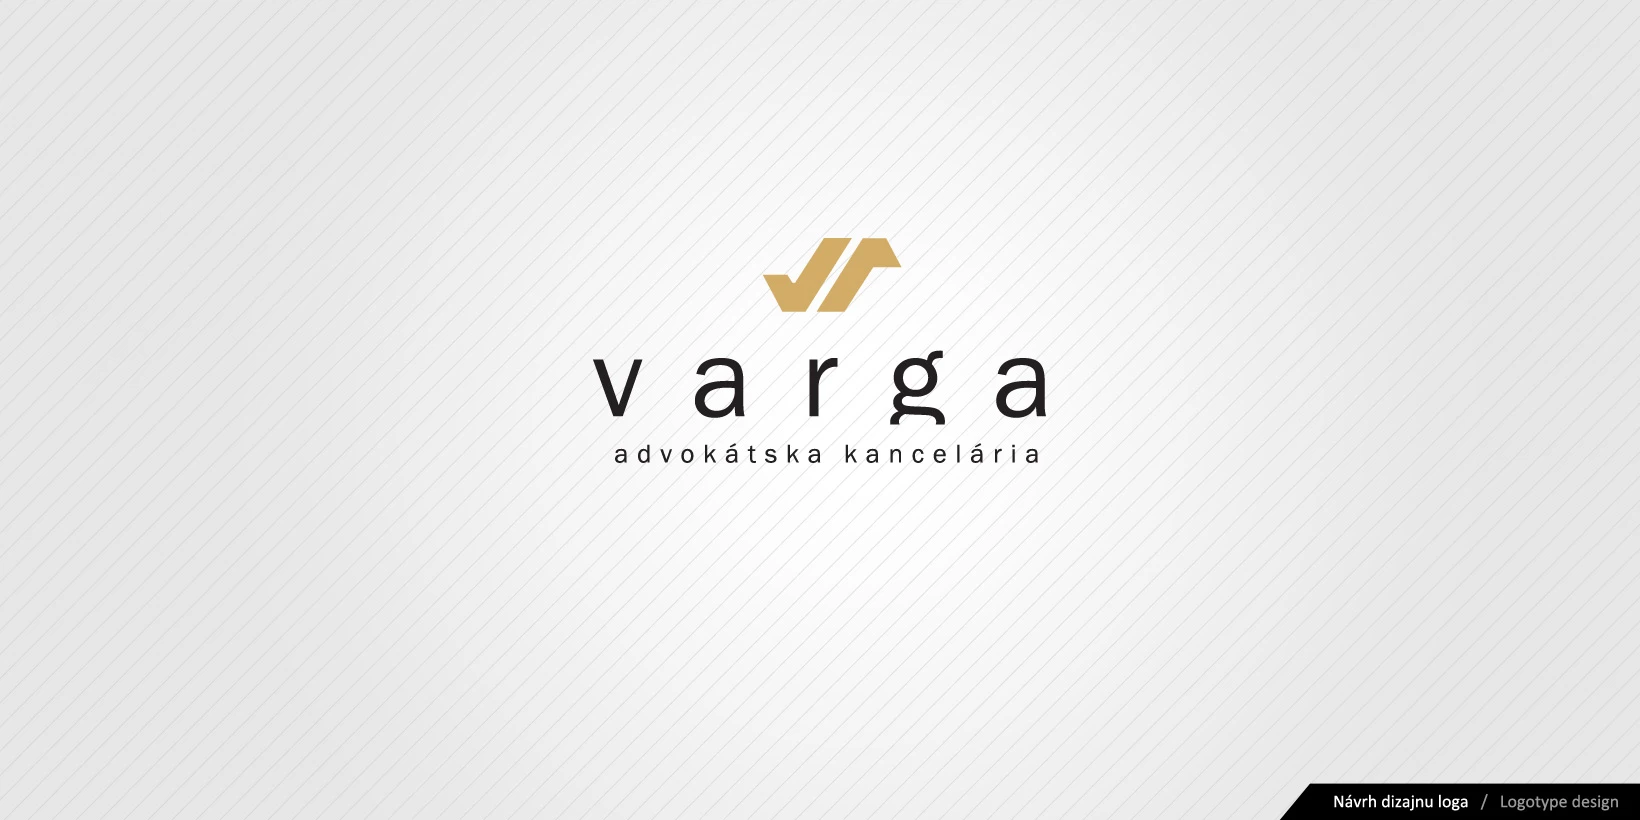 Návrh logotypu Advokátskej kancelárie Varga